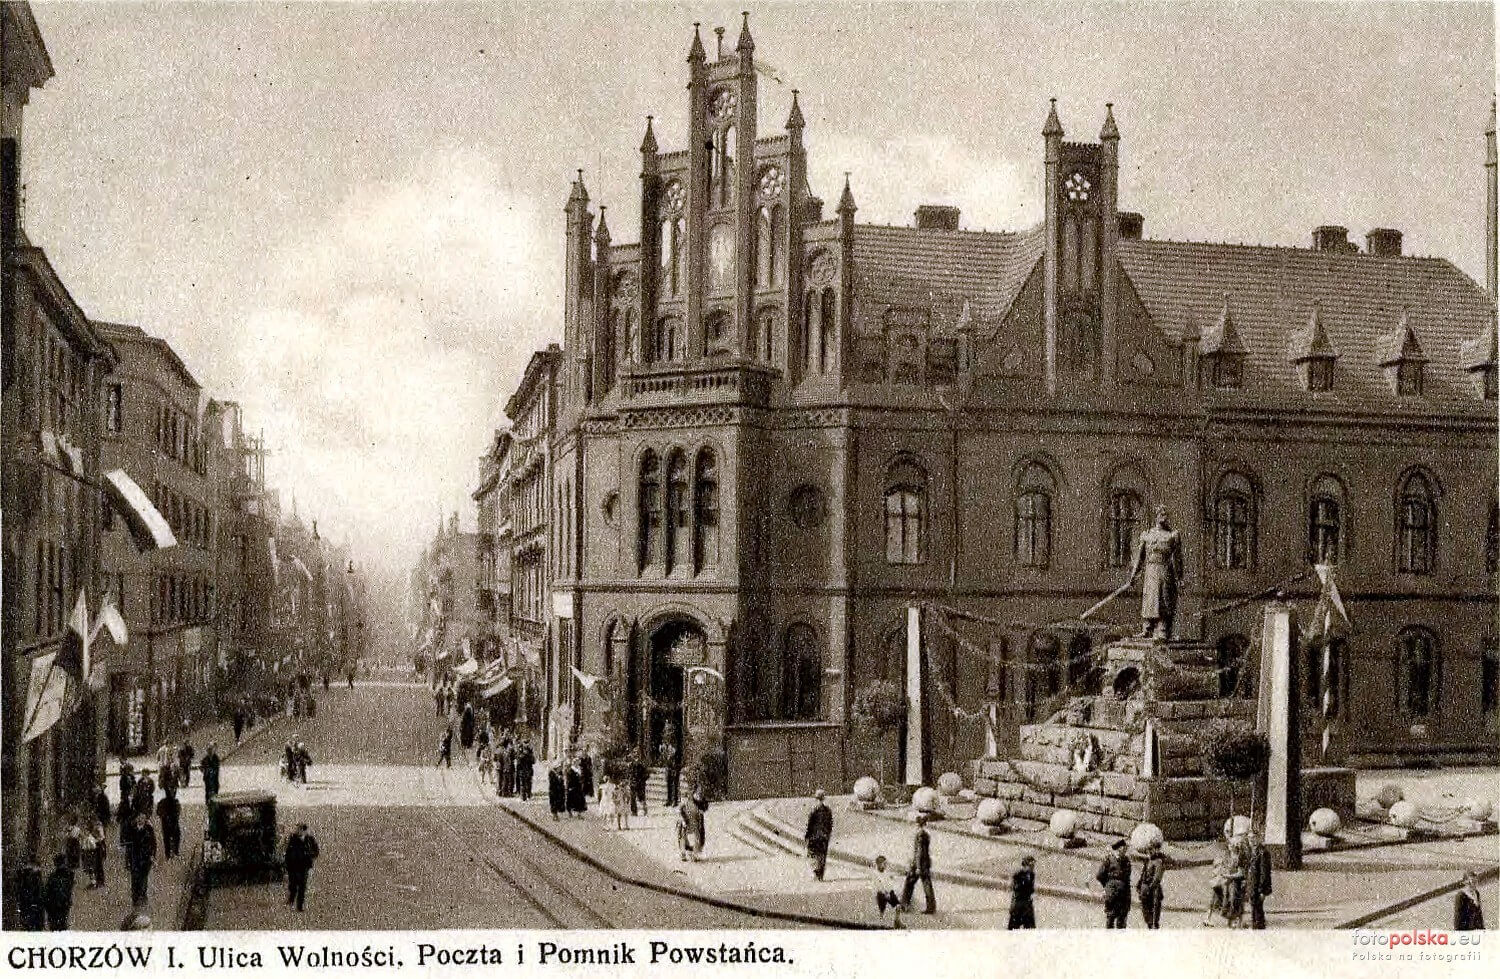 Chorzów - Pomnik Powstańca Śląskiego, zburzony w 1939 r.